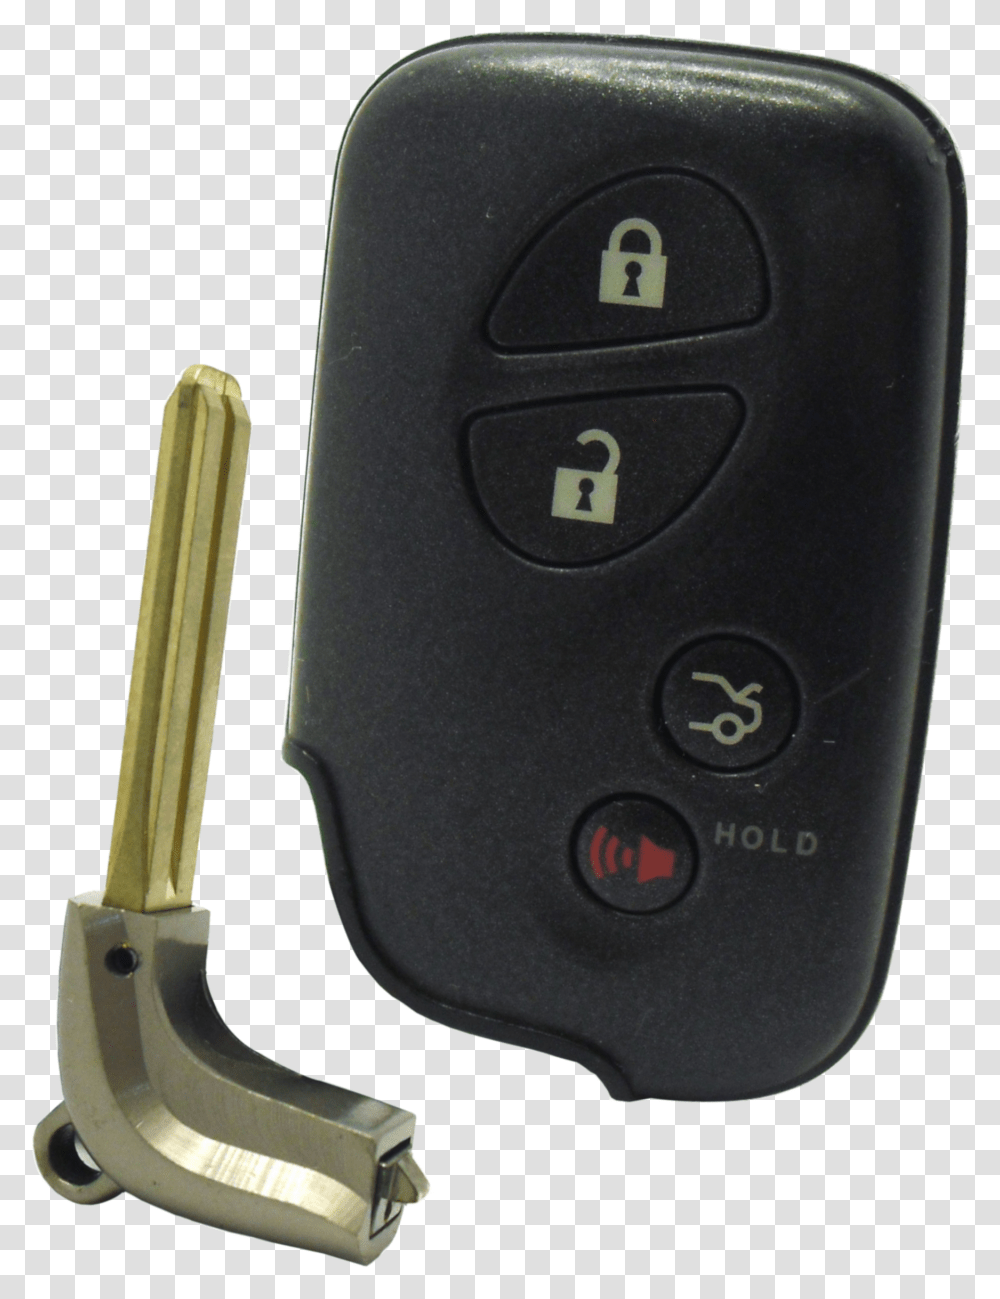 Lexus Smart Key Remote 4 Button W Car Trunk Car Keys 2007 Lexus Lx Key, Mouse, Hardware, Computer, Electronics Transparent Png